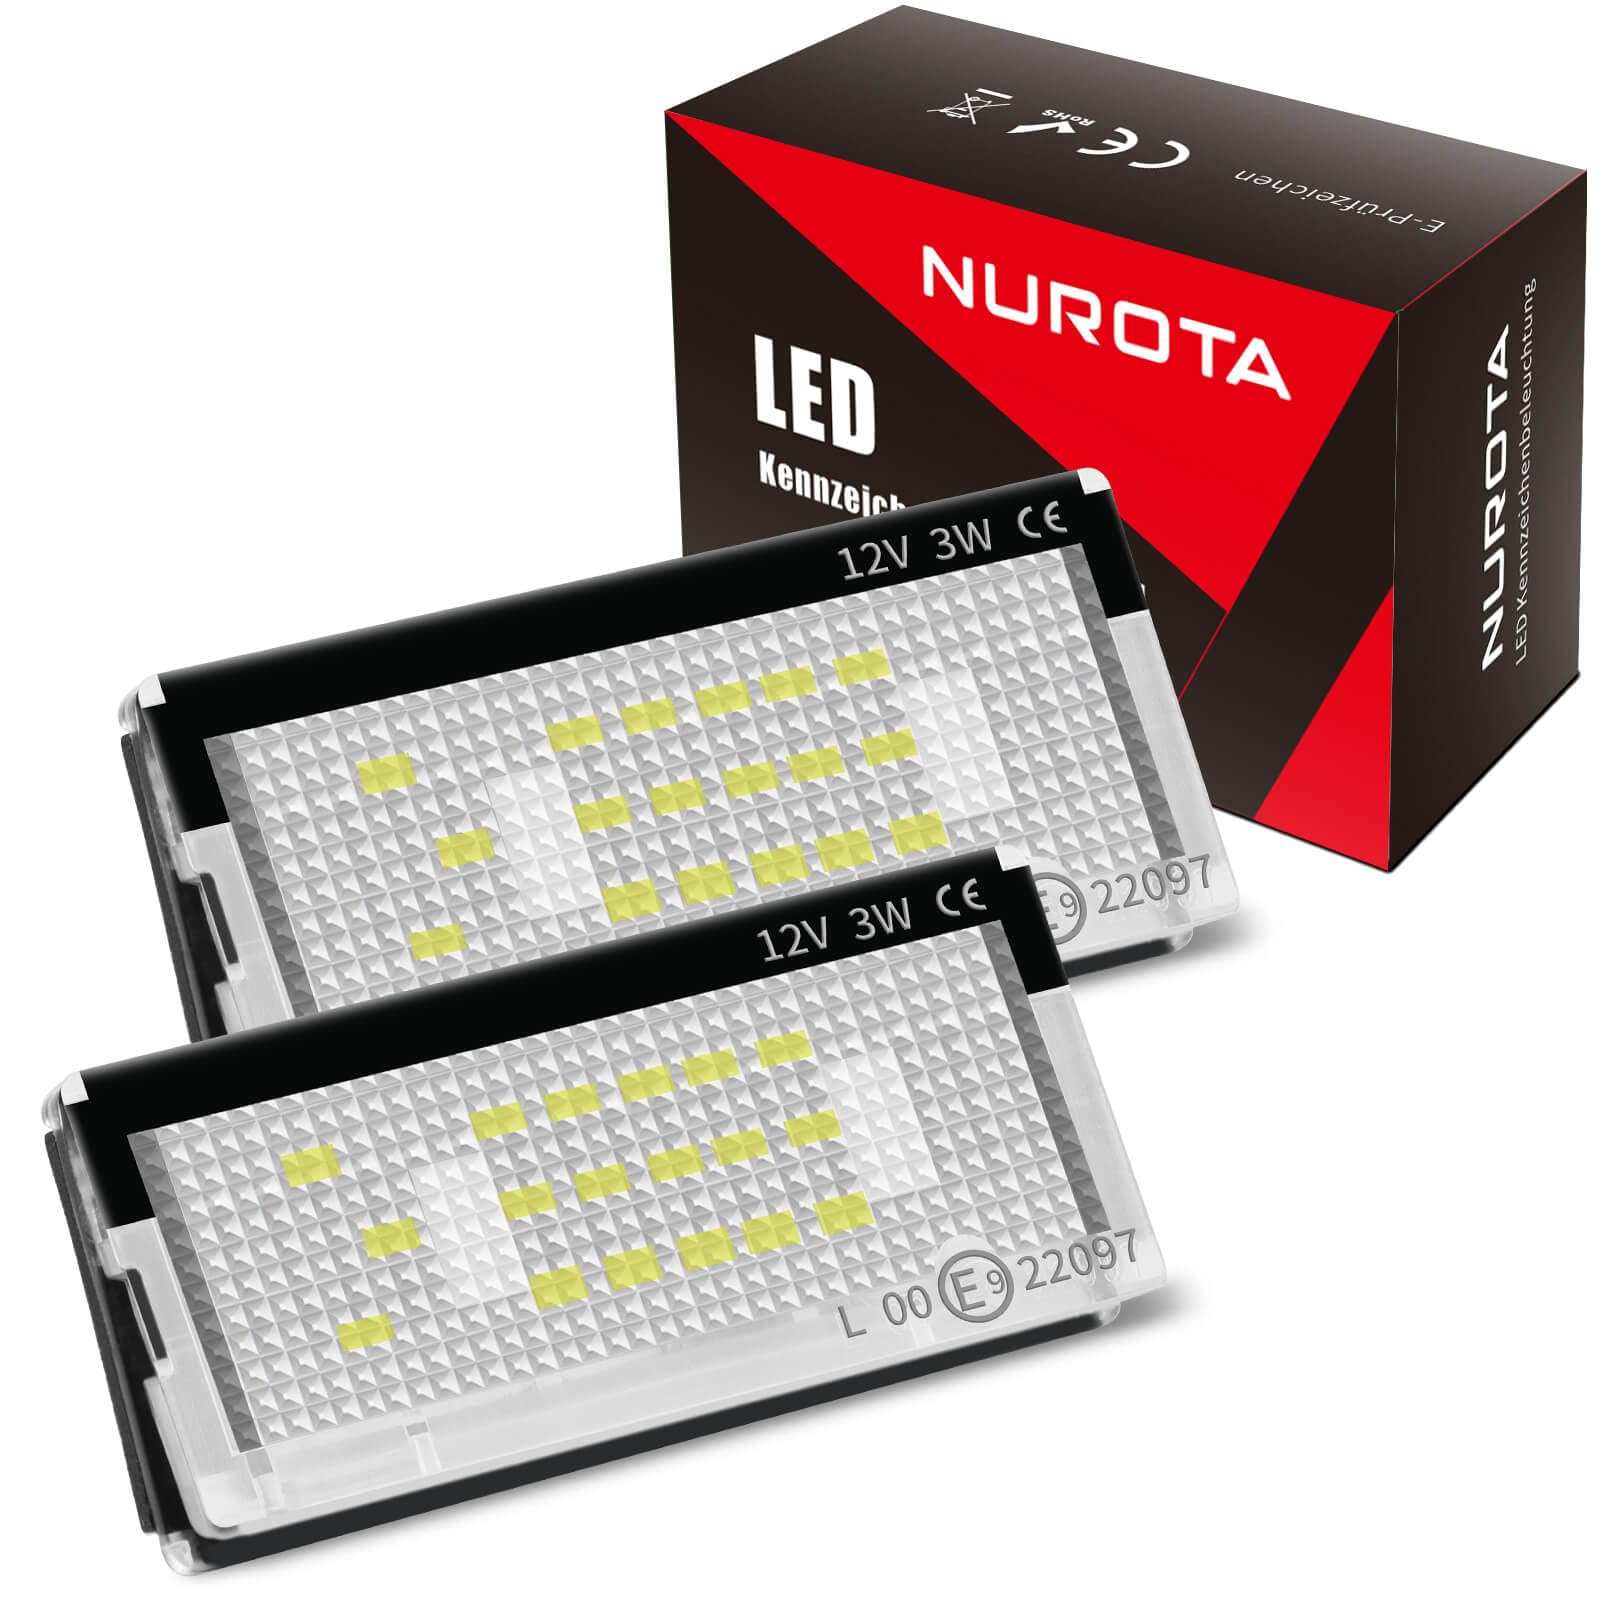 NUROTA Led Kennzeichenbeleuchtung mit E Prüfzeichen - Plug and Play Kennzeichen Beleuchtung Led - Kompatibel mit BMW 3er E46 von NUROTA